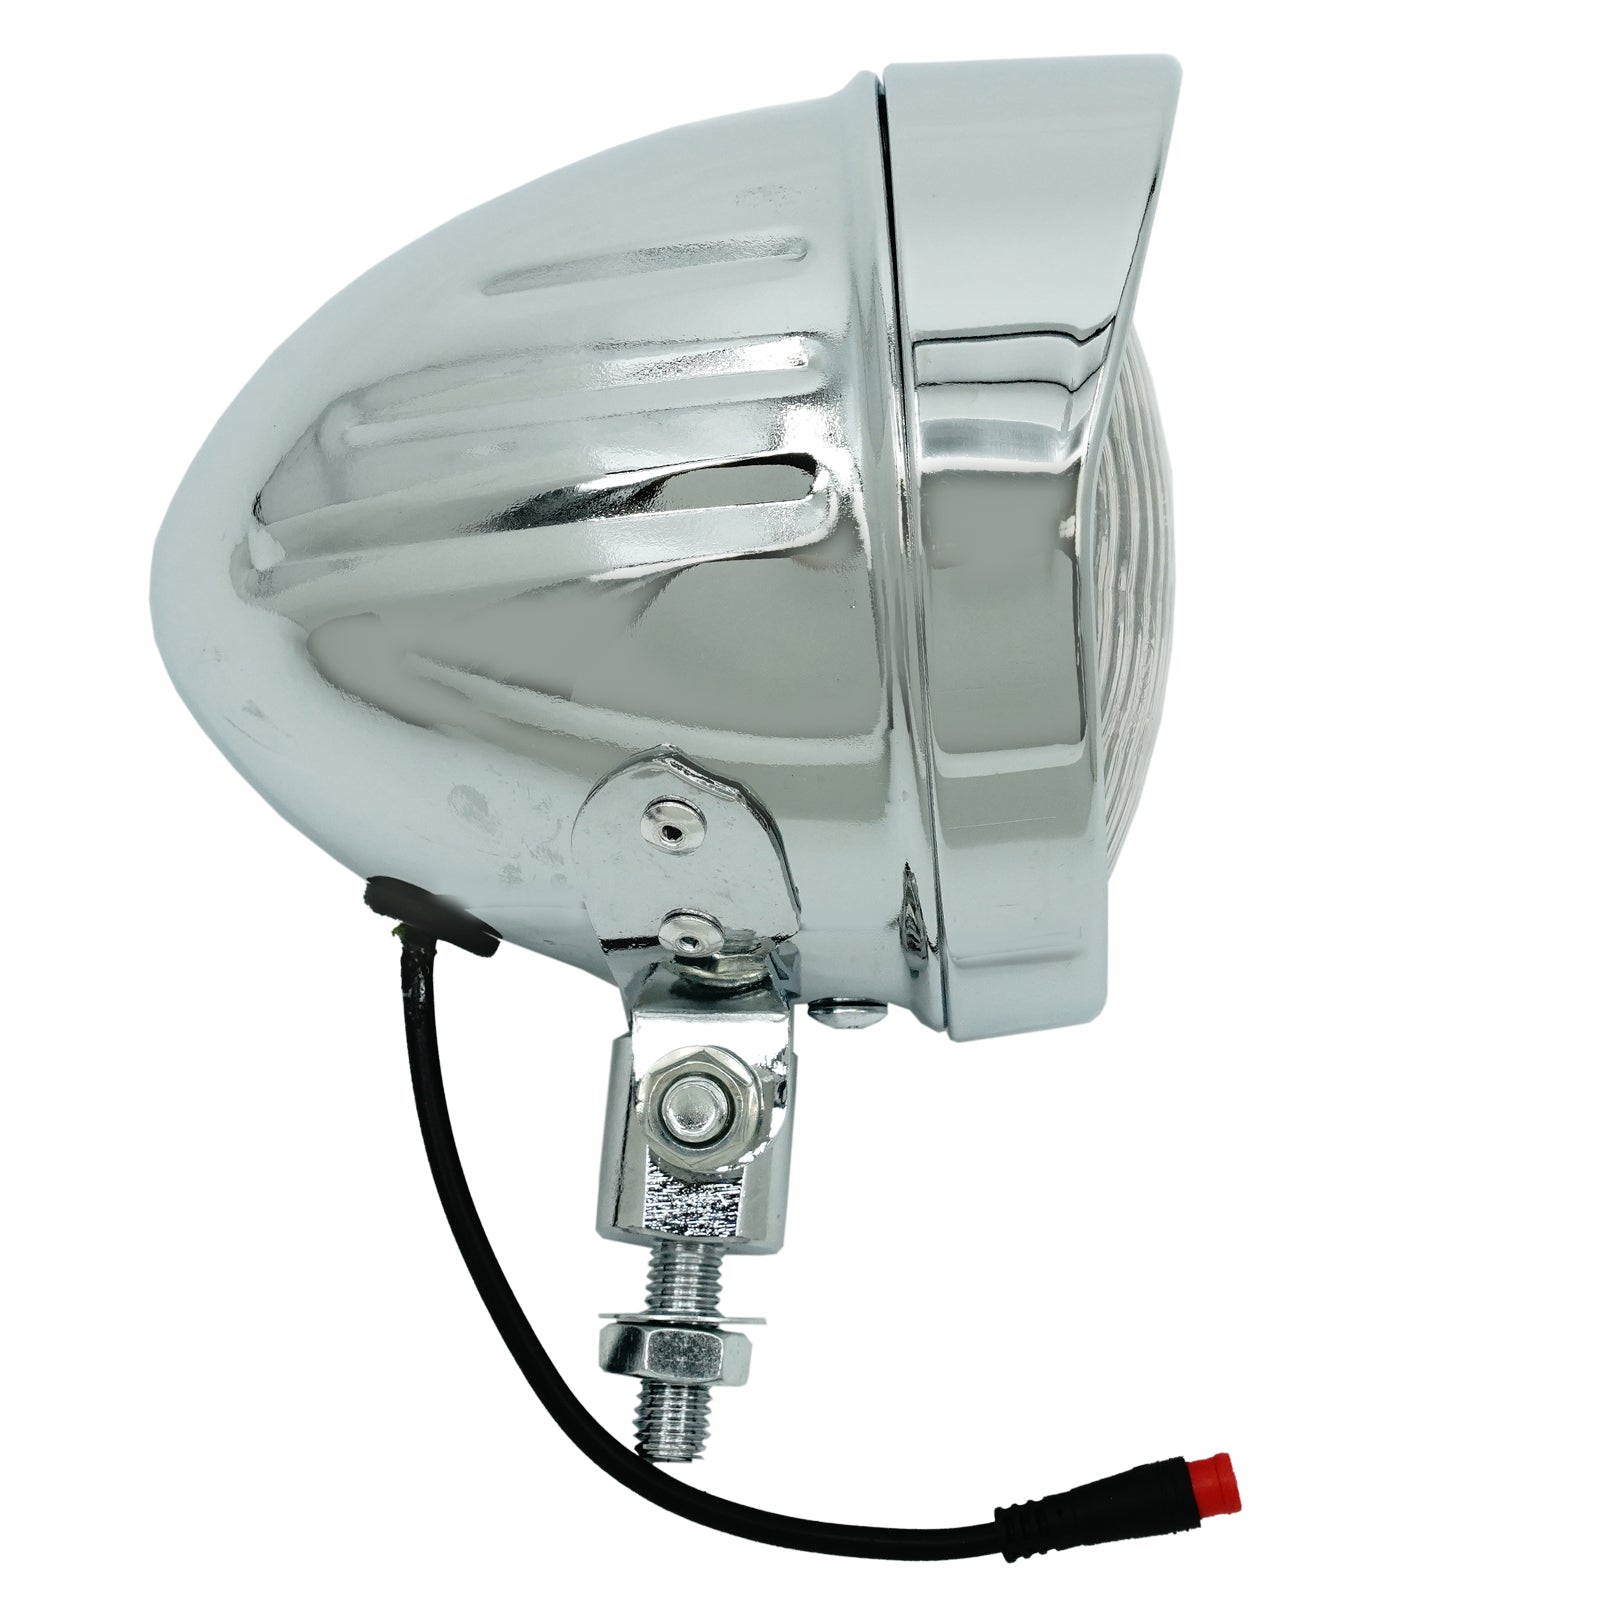 Tracer LG-FN-310-48 Classical Chrome Vintage LED Headlight 12V-48V for Electric Bike